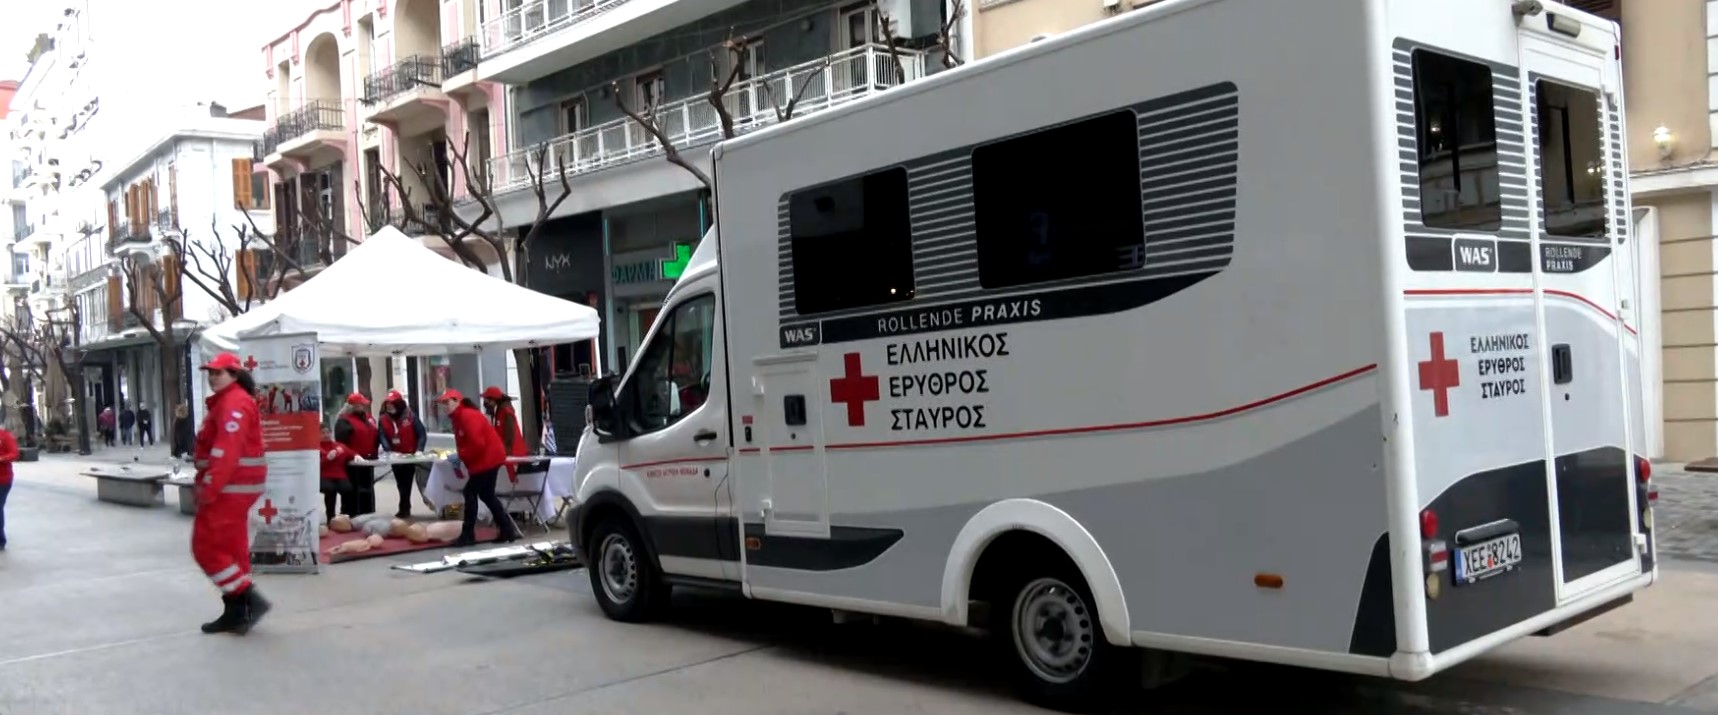 Ελληνικός Ερυθρός Σταυρός: Δράση για παροχή πρώτων βοηθειών στο κέντρο της Θεσσαλονίκης